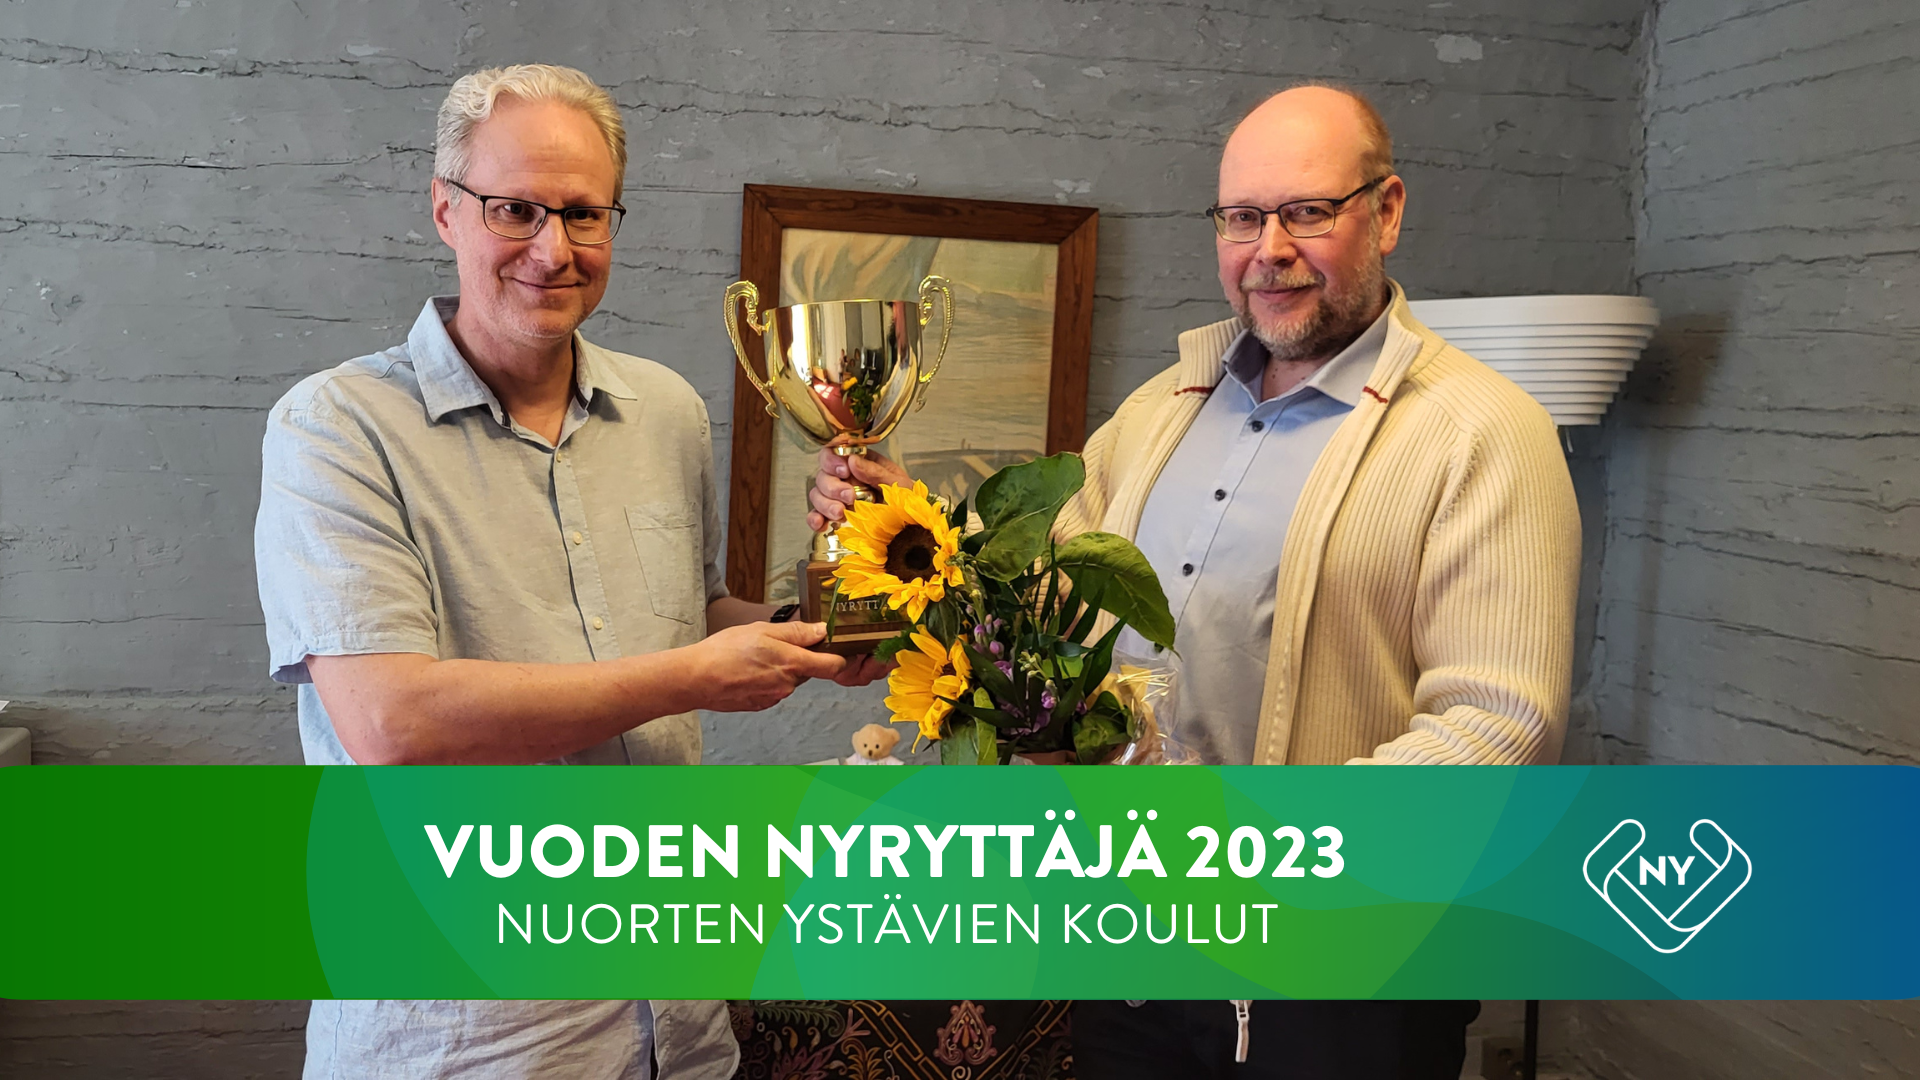 Marko Kielinen ojentaa vuoden Nyryttäjä -palkinnon koulujen rehtori Kimmo Laineelle